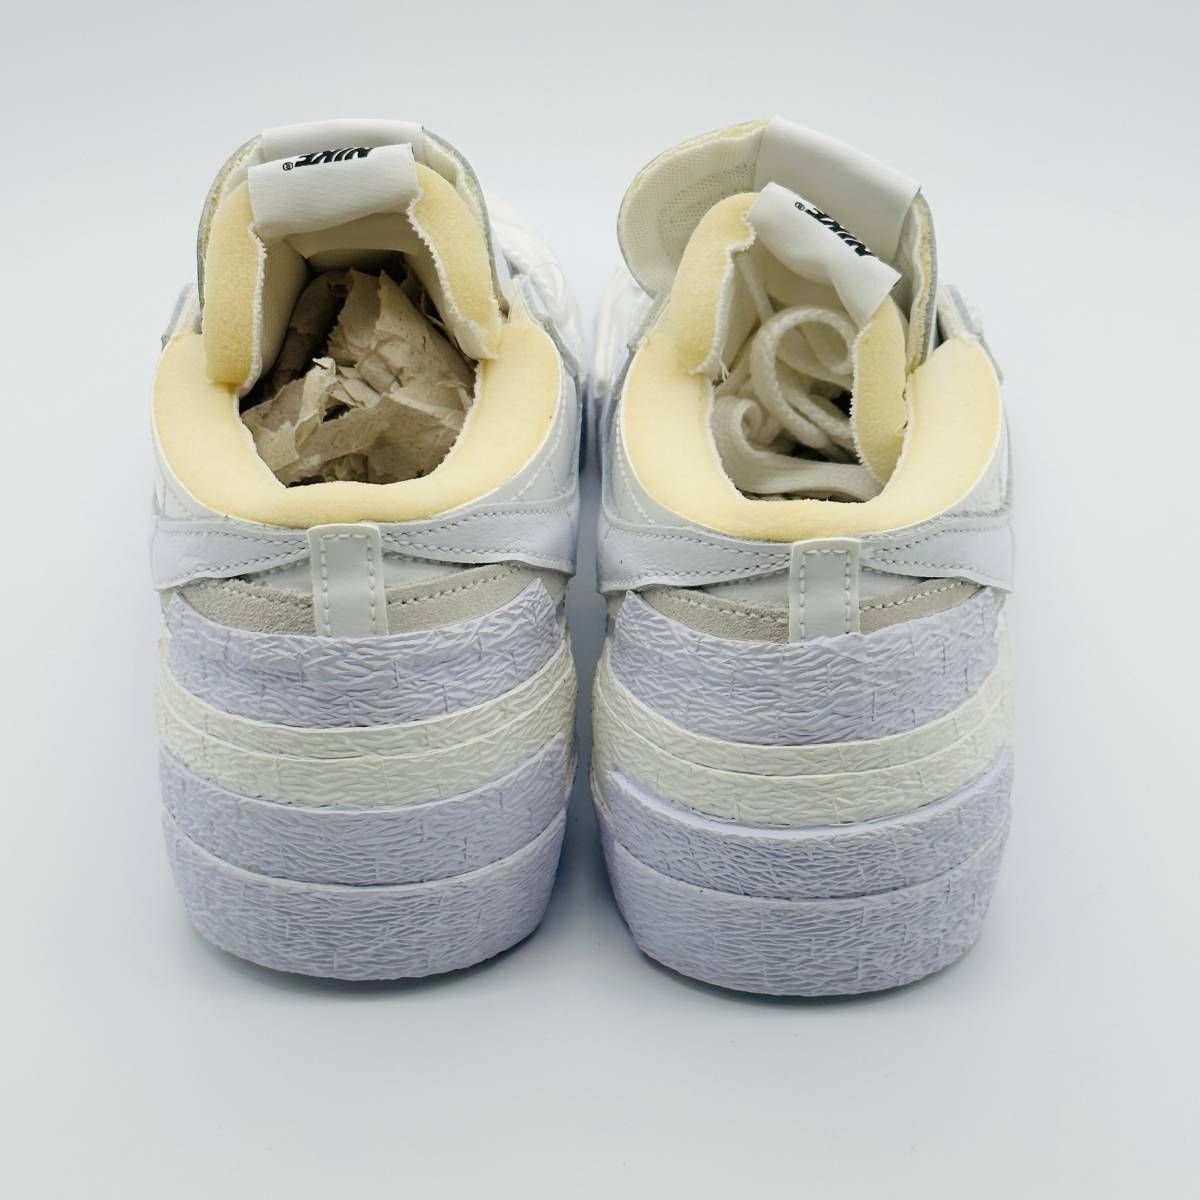 【新品未使用】 Nike Blazer Low sacai White Patent Leather DM6443-100 サカイ ナイキ ブレーザー  ロー ホワイト グレー dunk yeezy